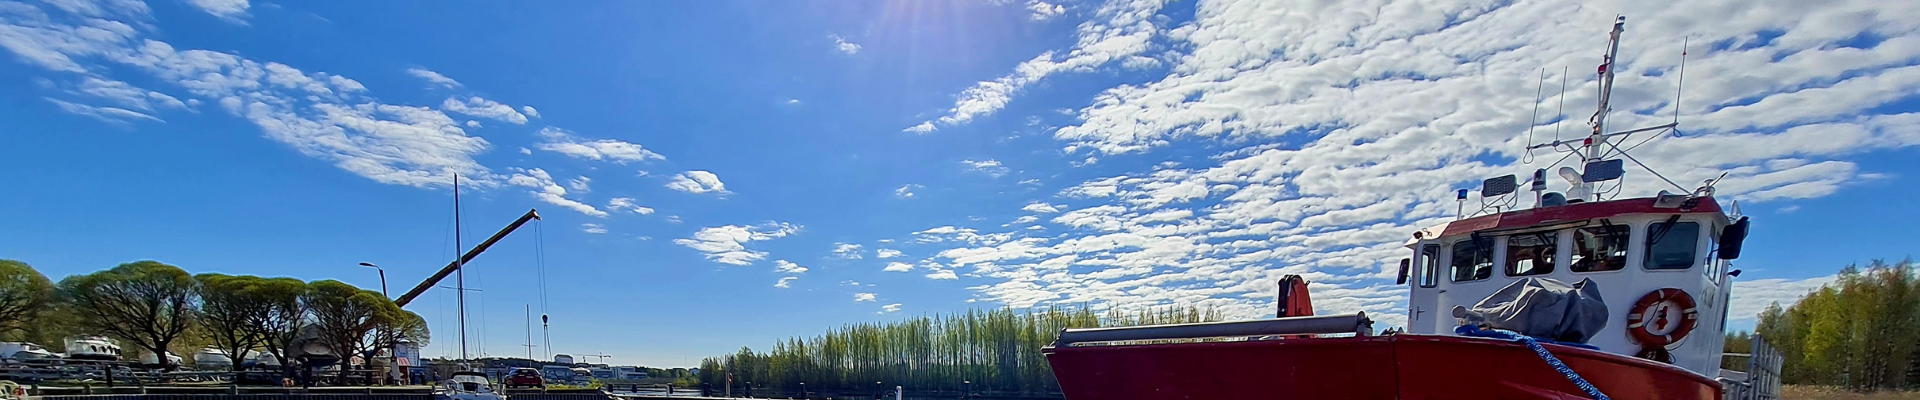 Pelastusvene laiturissa ja sininen, pilvinen taivas.